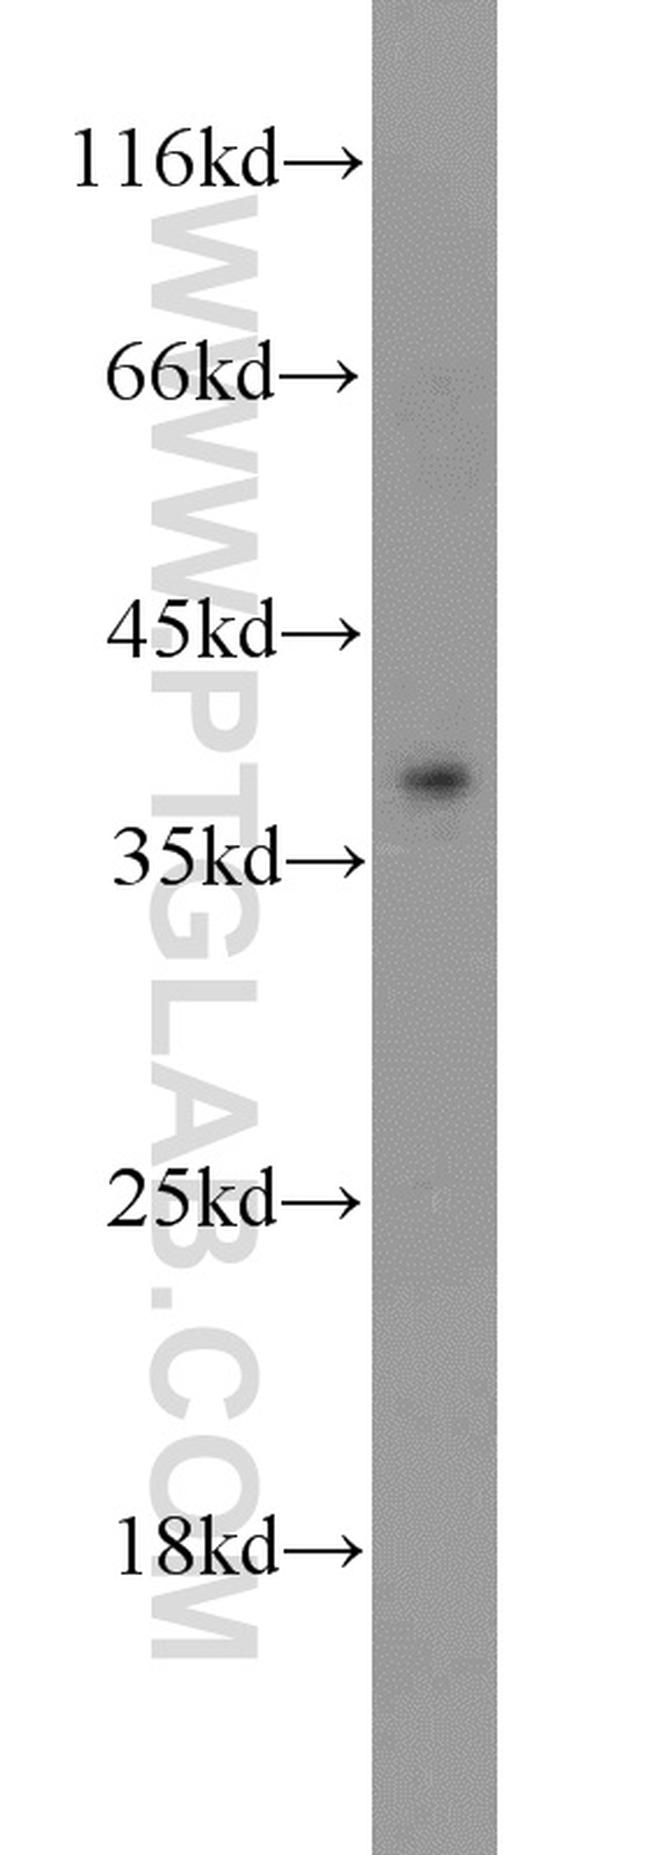 ADH1C Antibody in Western Blot (WB)